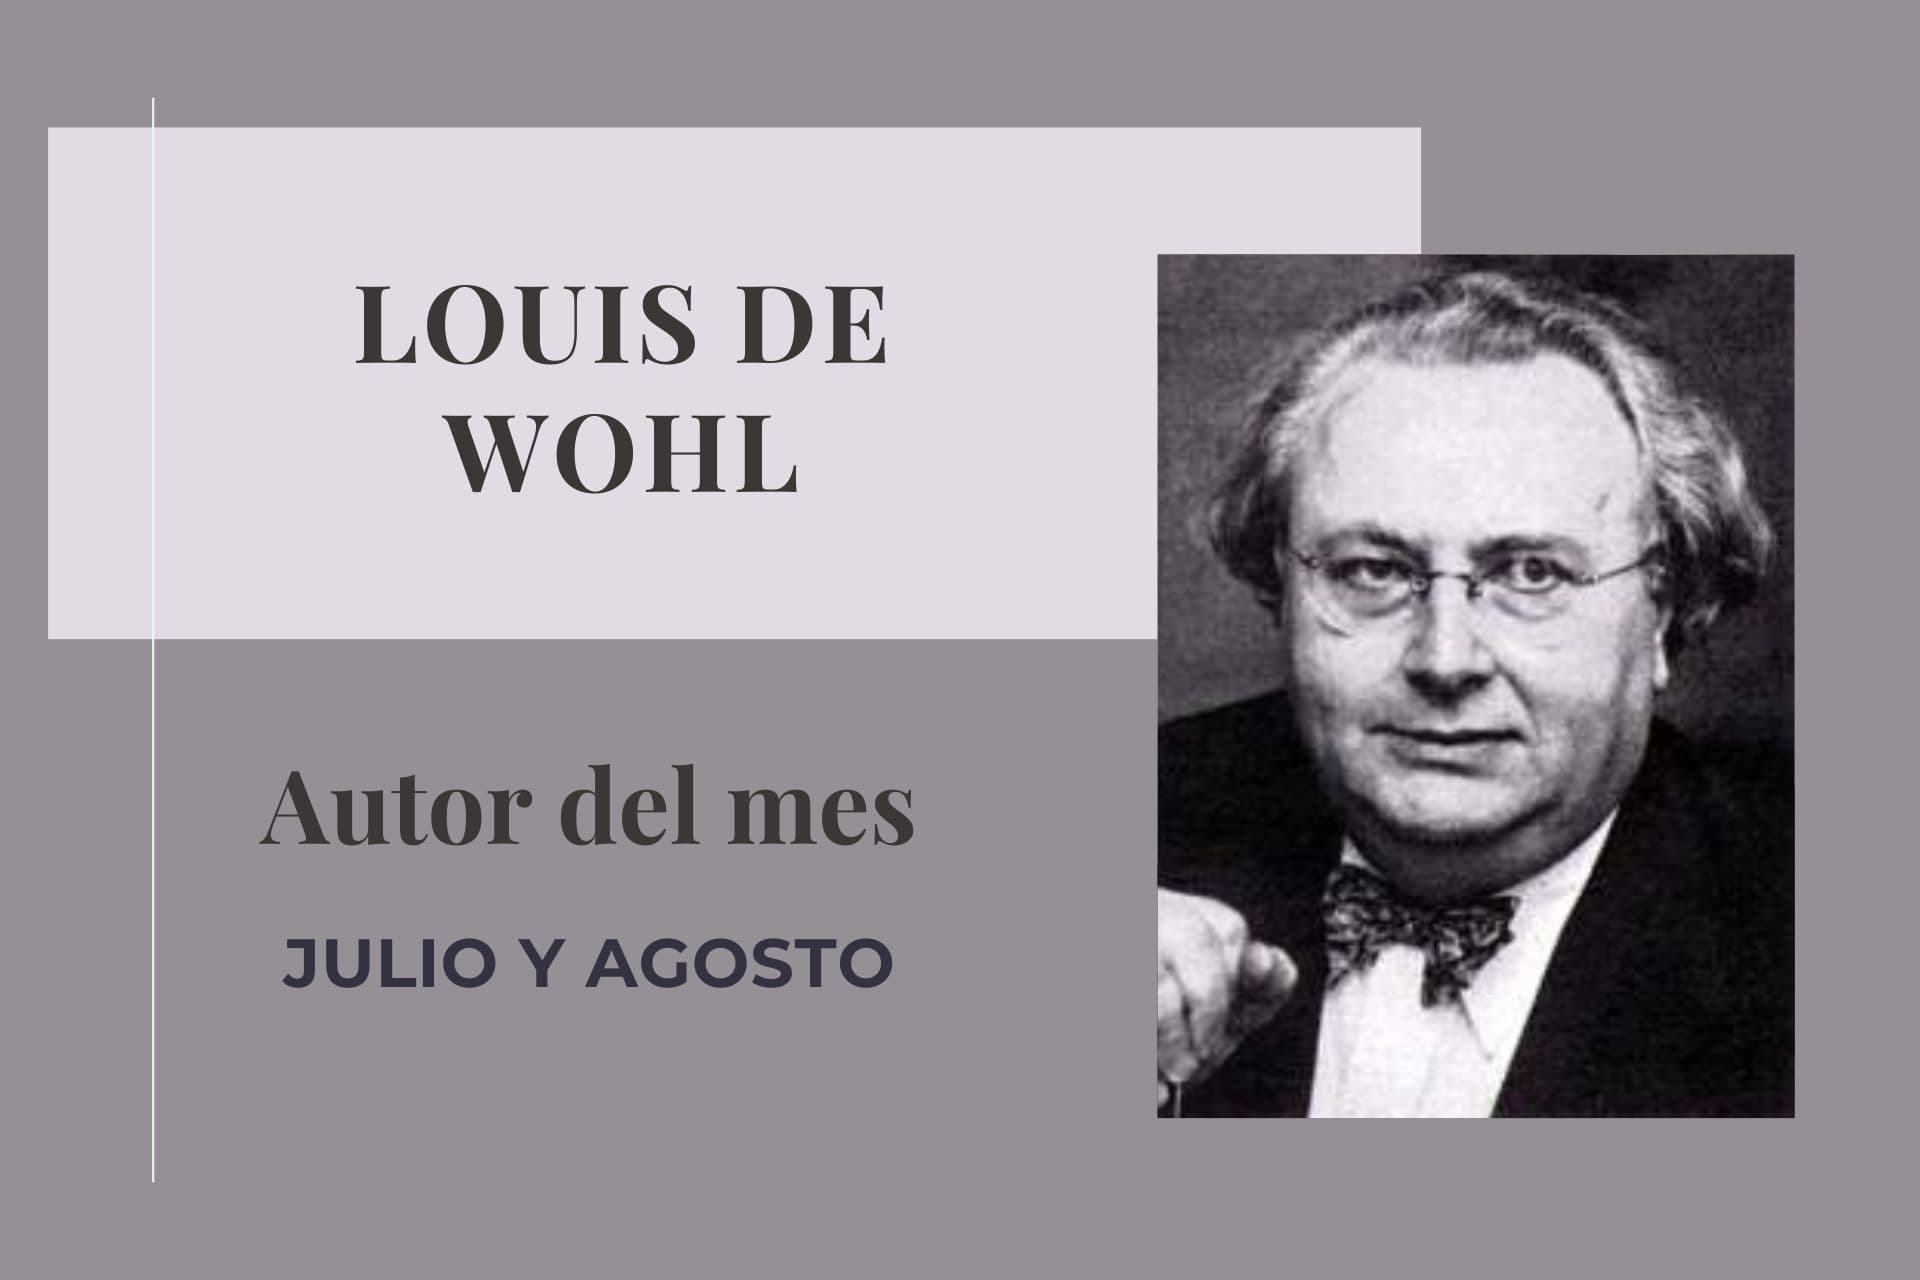 Louis de Wohl